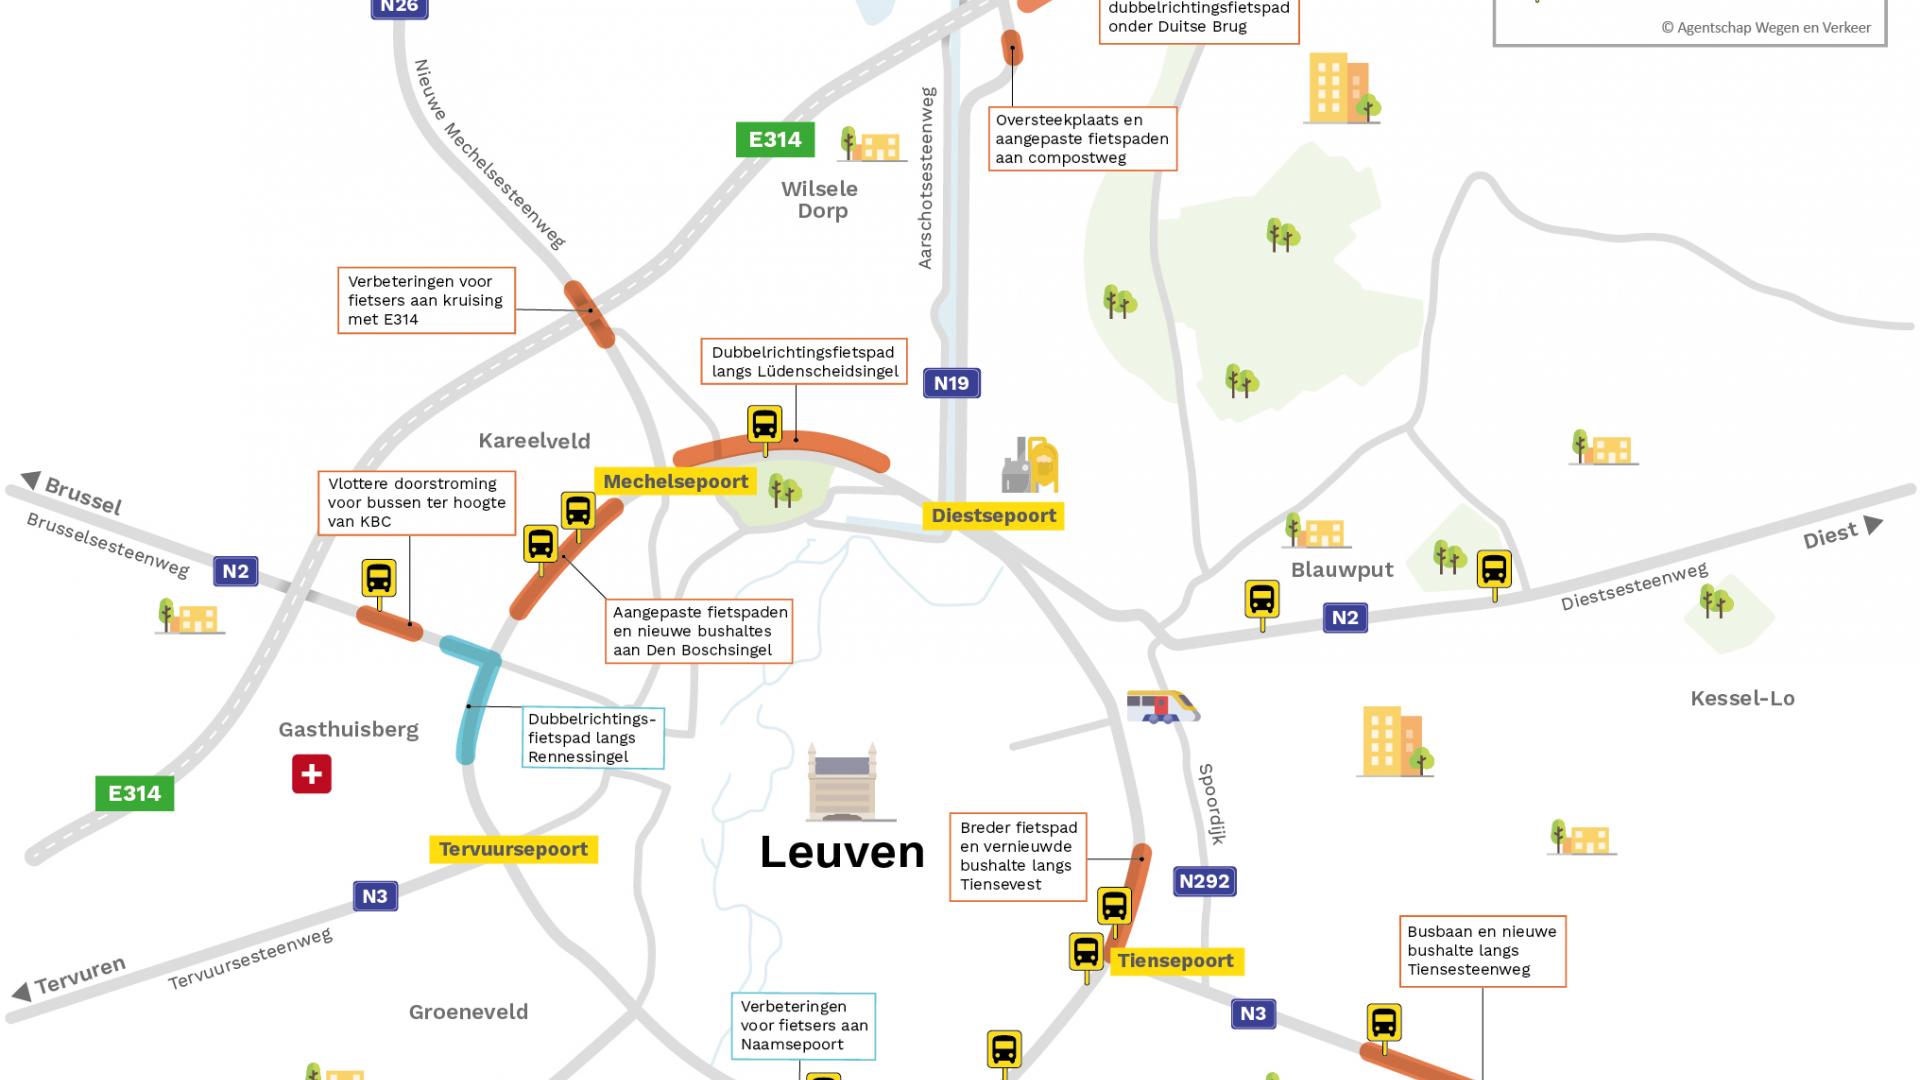 Overzichtskaart met verbeteringen voor fietsers en openbaar vervoer rondom Leuven